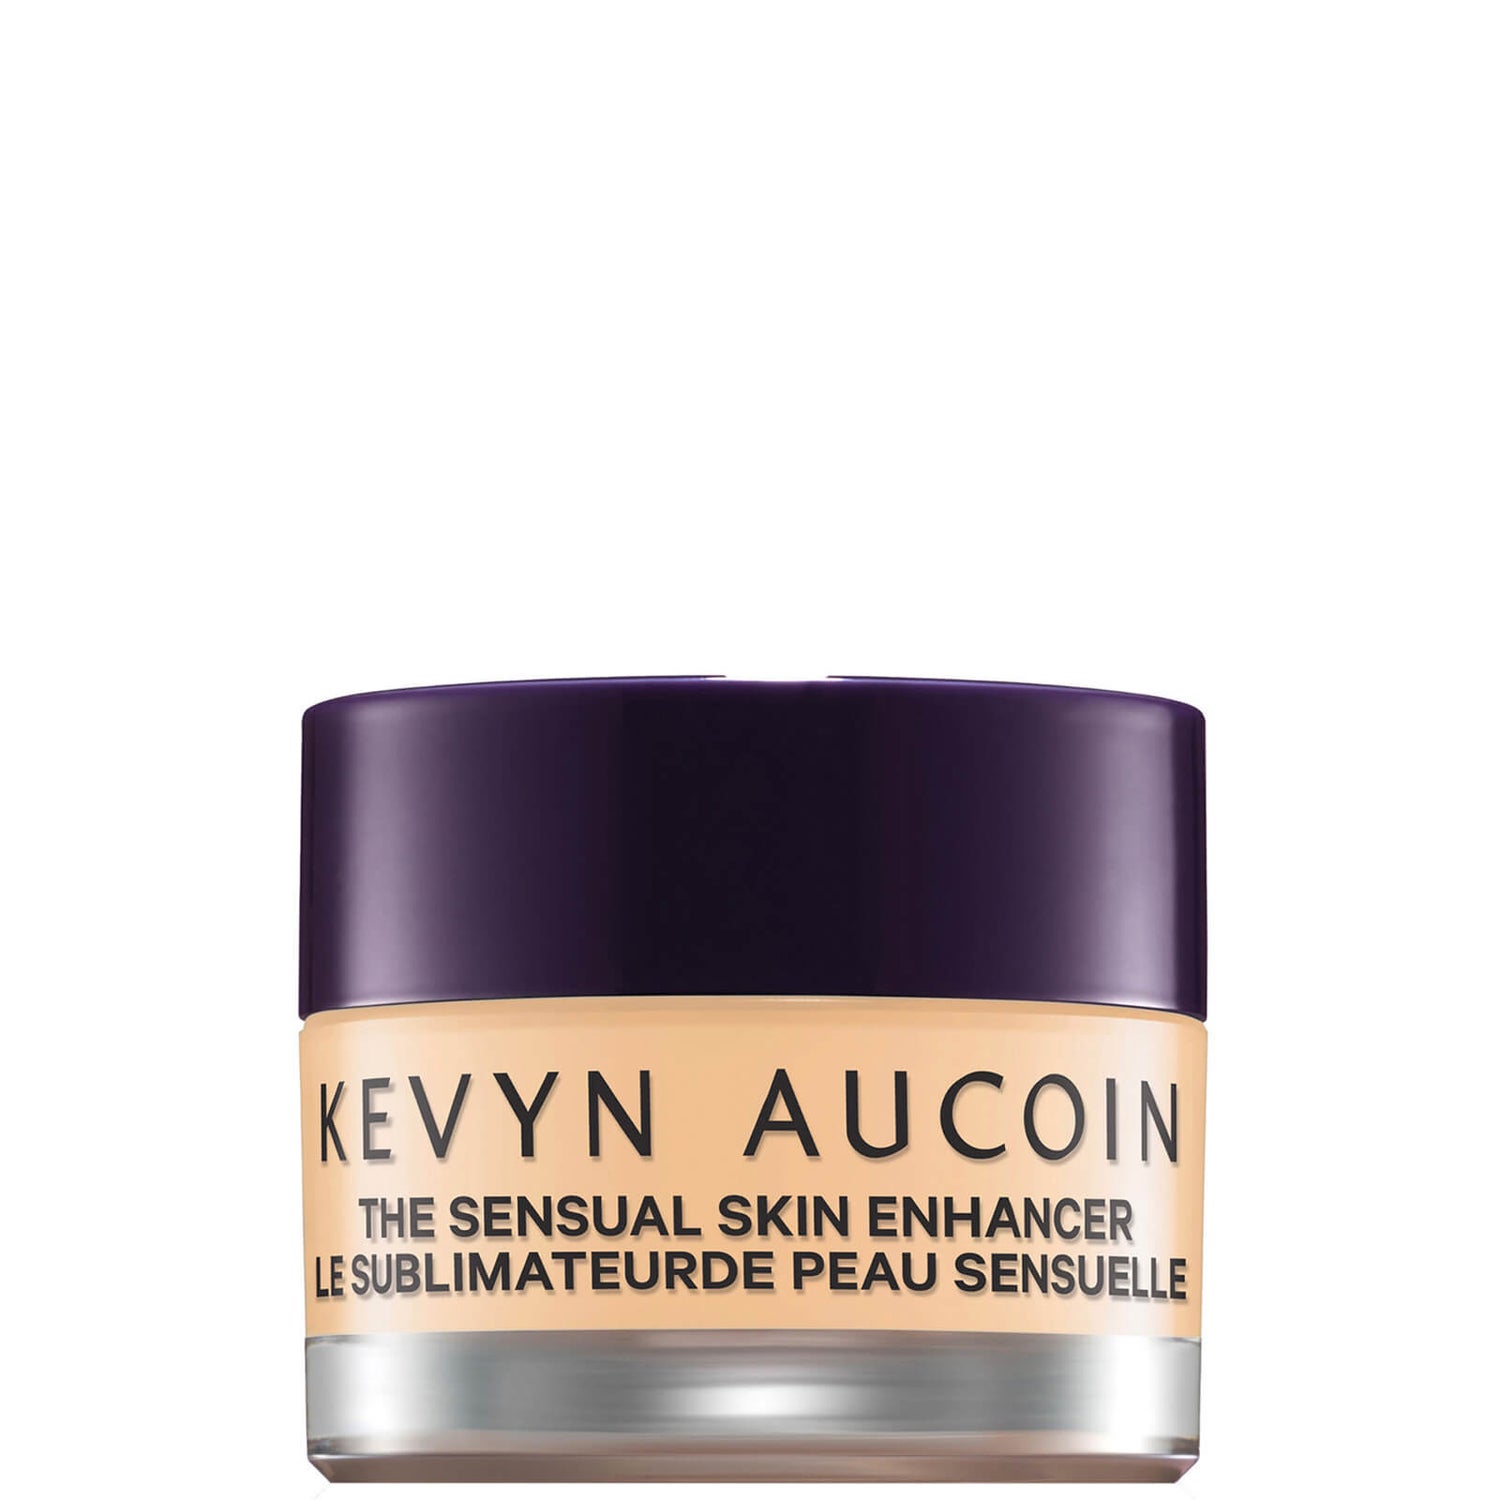 Kevyn Aucoin The Sensual Skin Enhancer 10g (Various Shades)